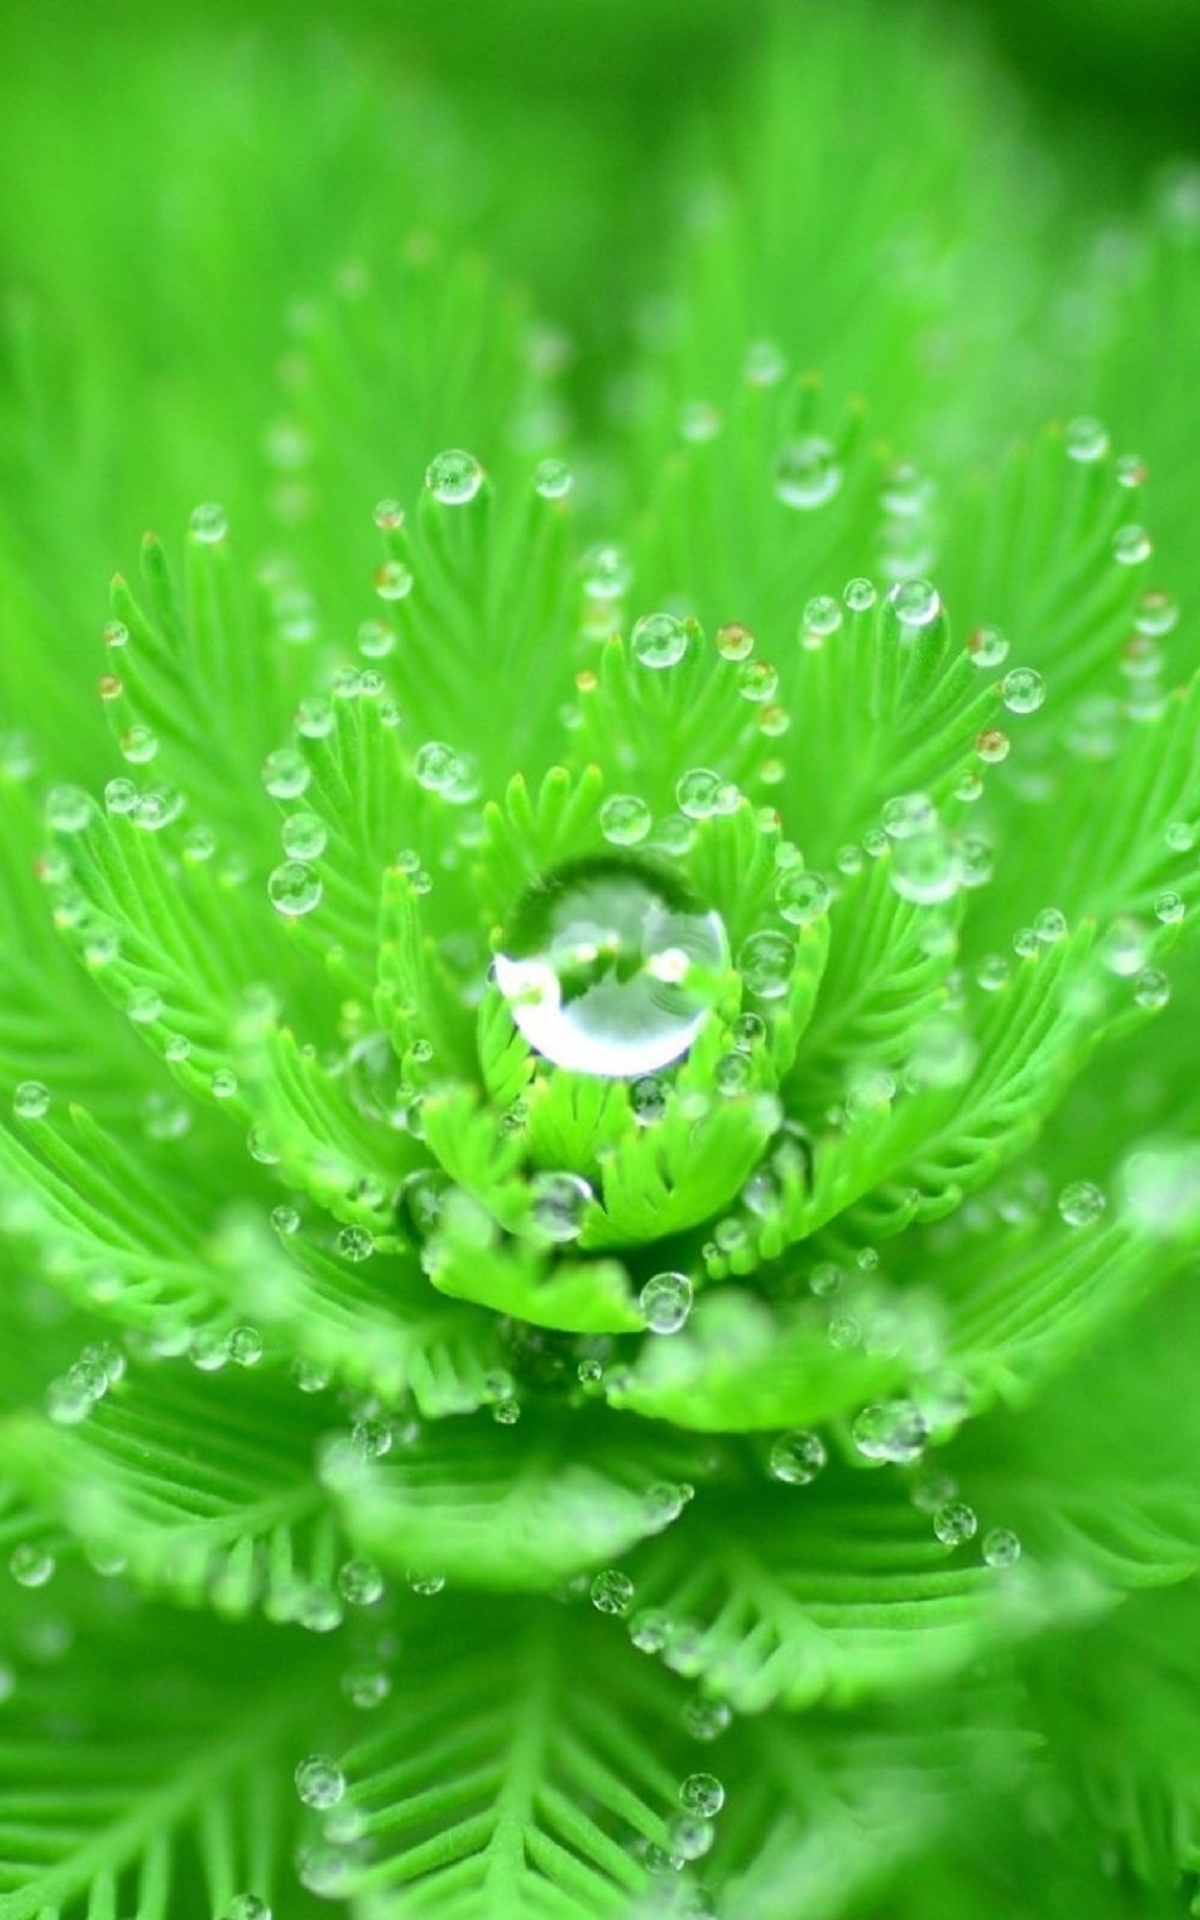 Картинка: Растение, зелёное, листочки, капли, роса, вода, форма